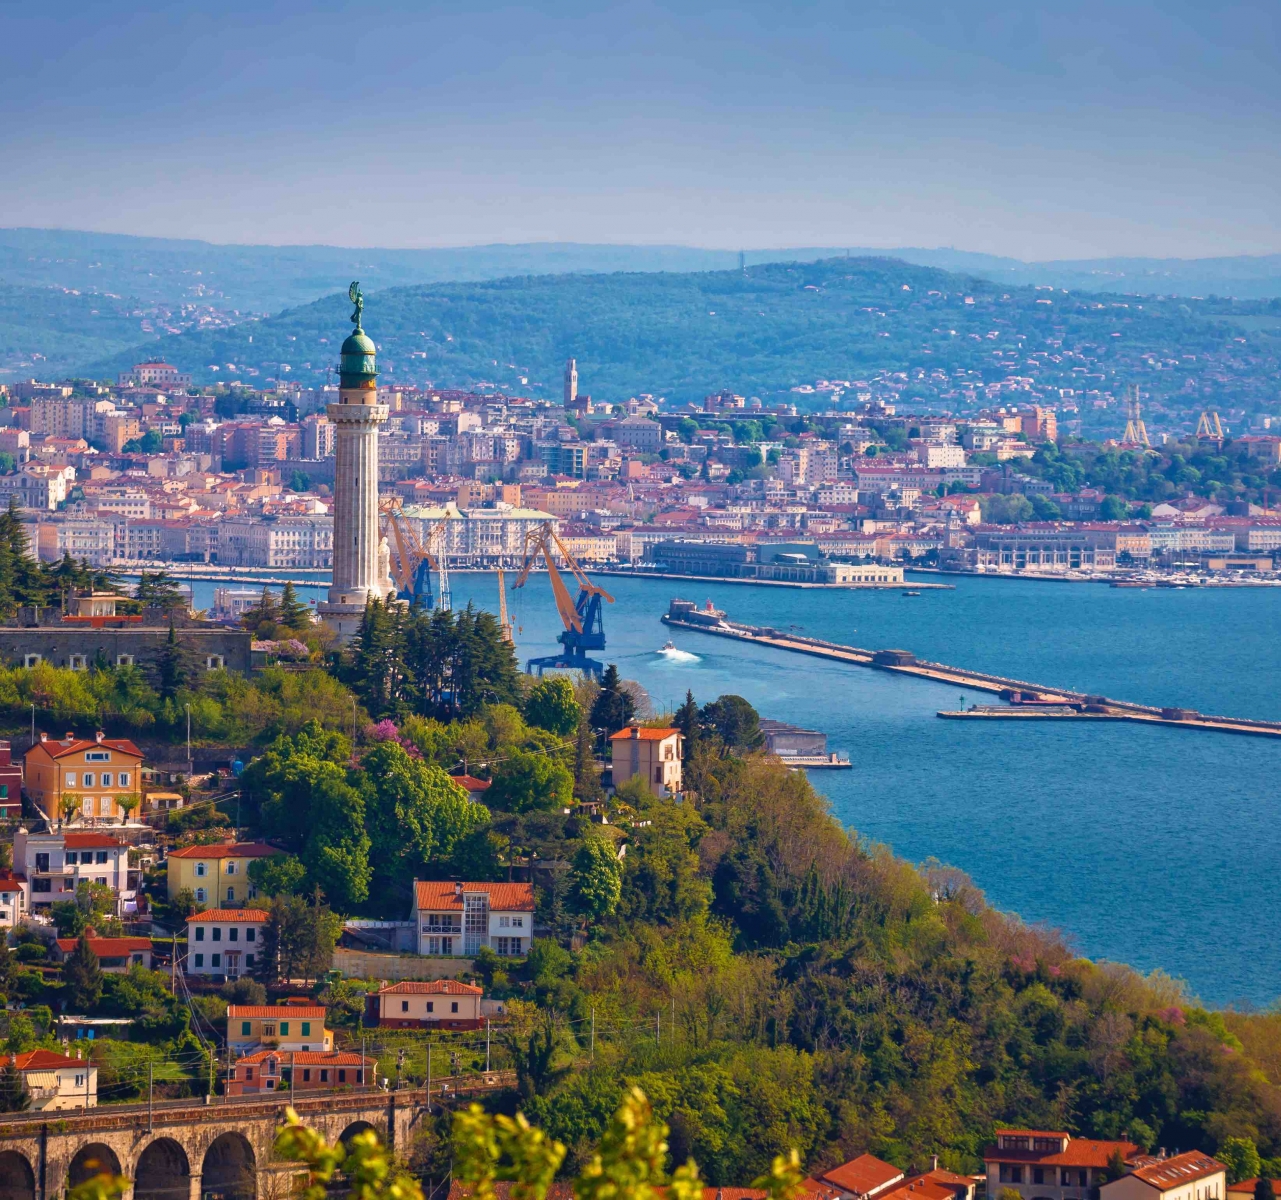 Vista panorámica del faro y el paisaje urbano de Trieste